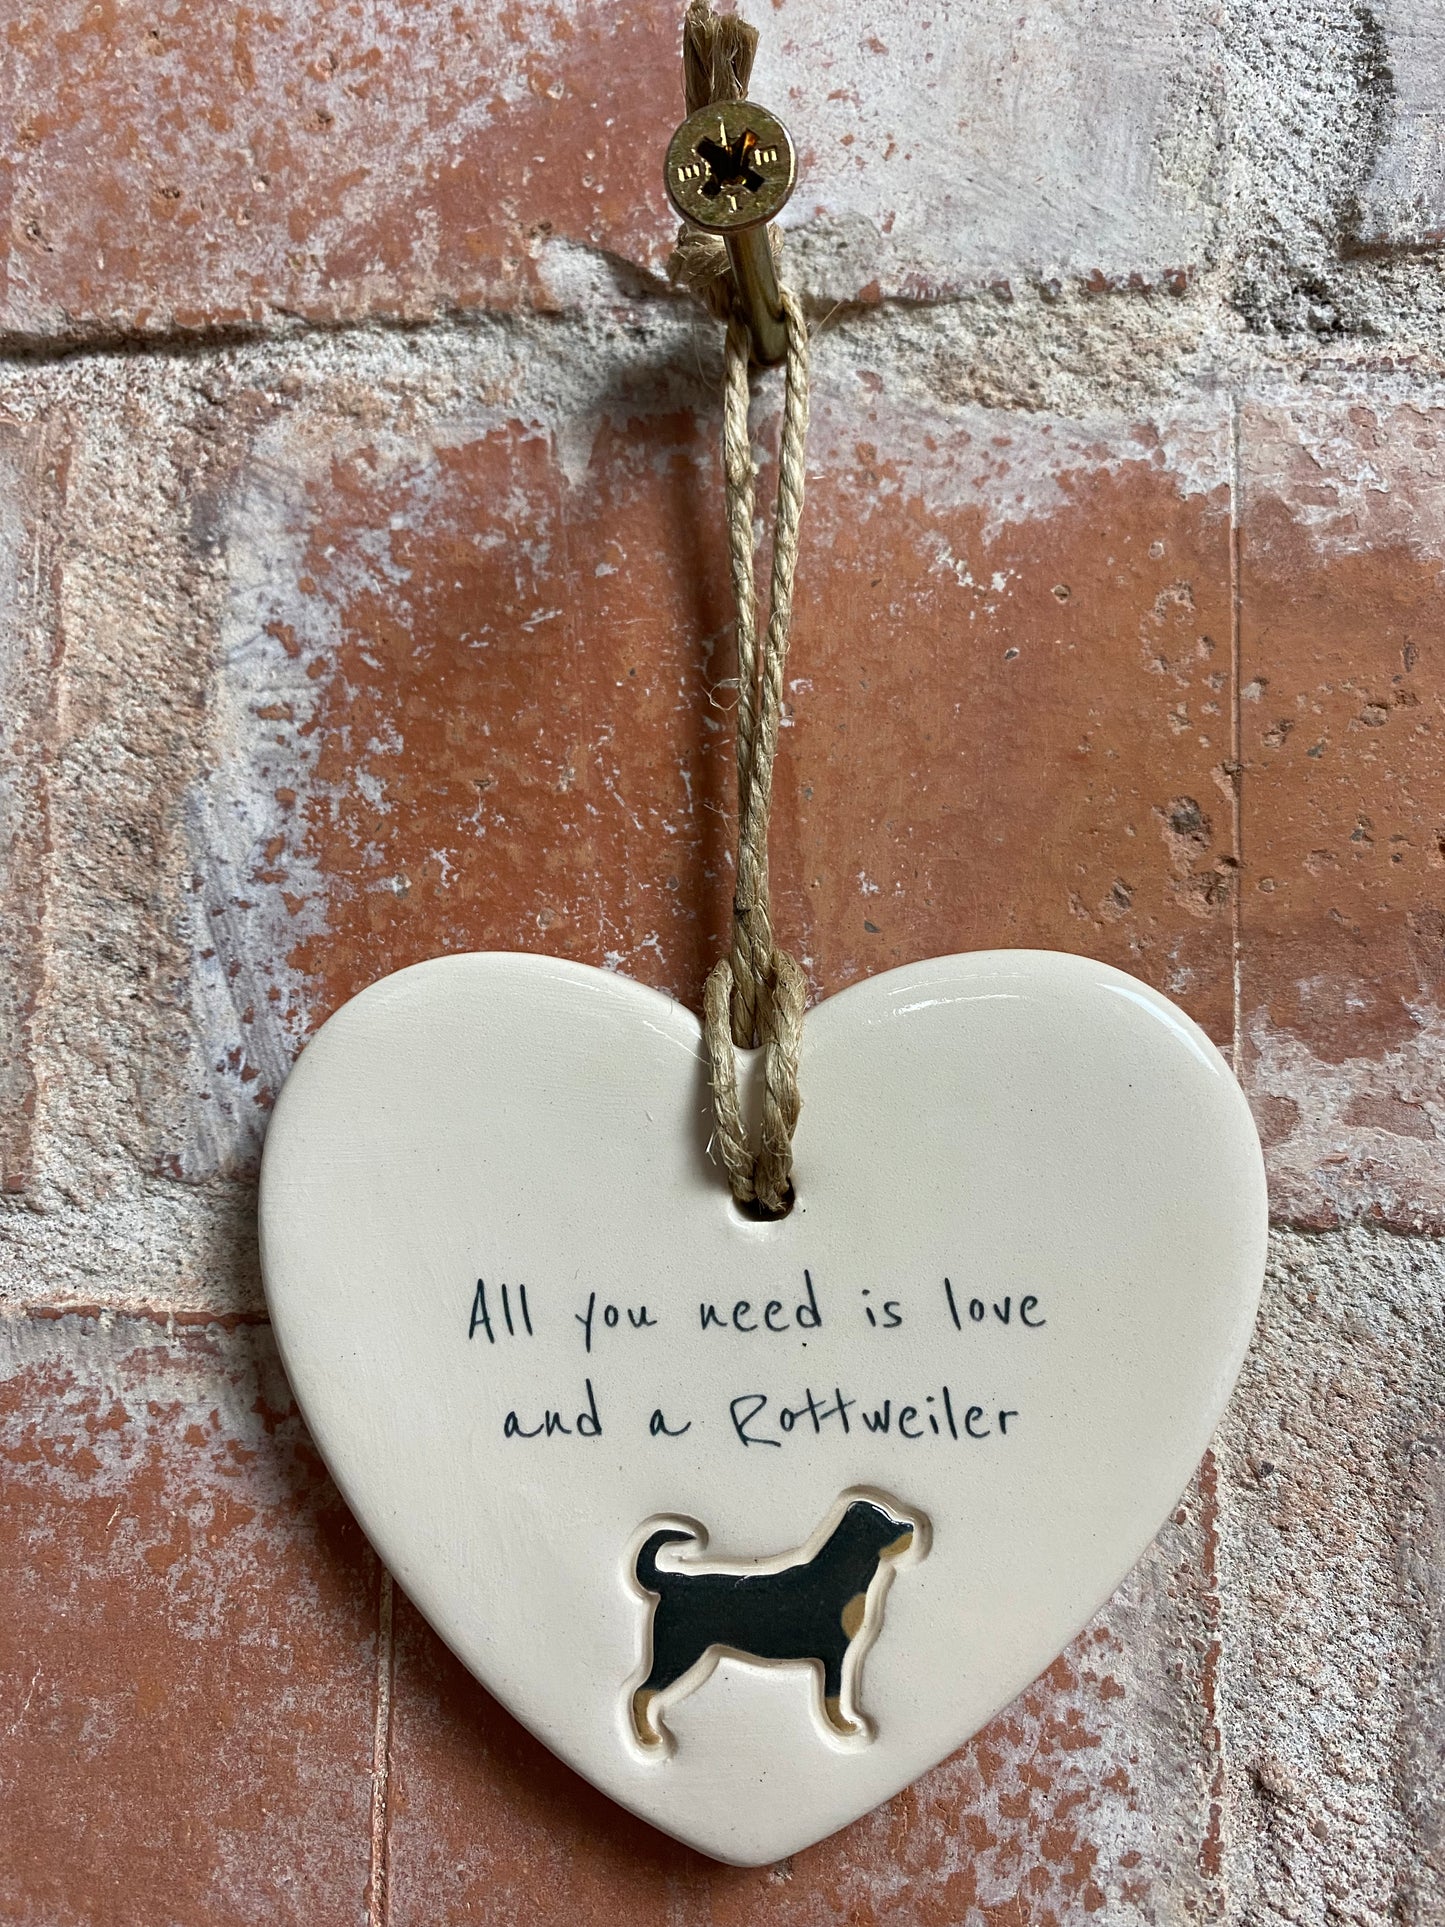 Rottweiler ceramic heart